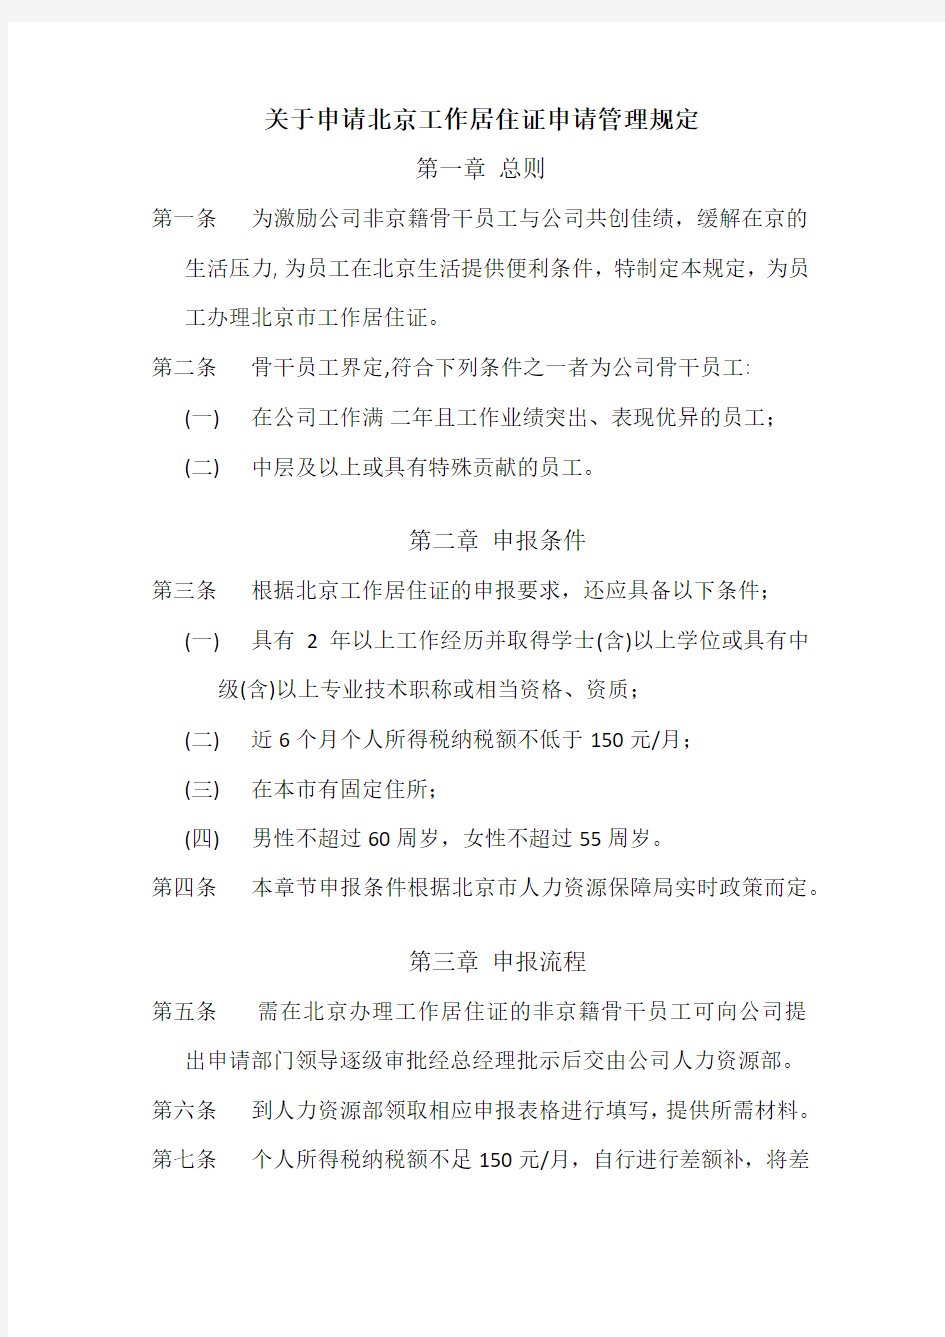 企业内部申请北京工作居住证管理制度